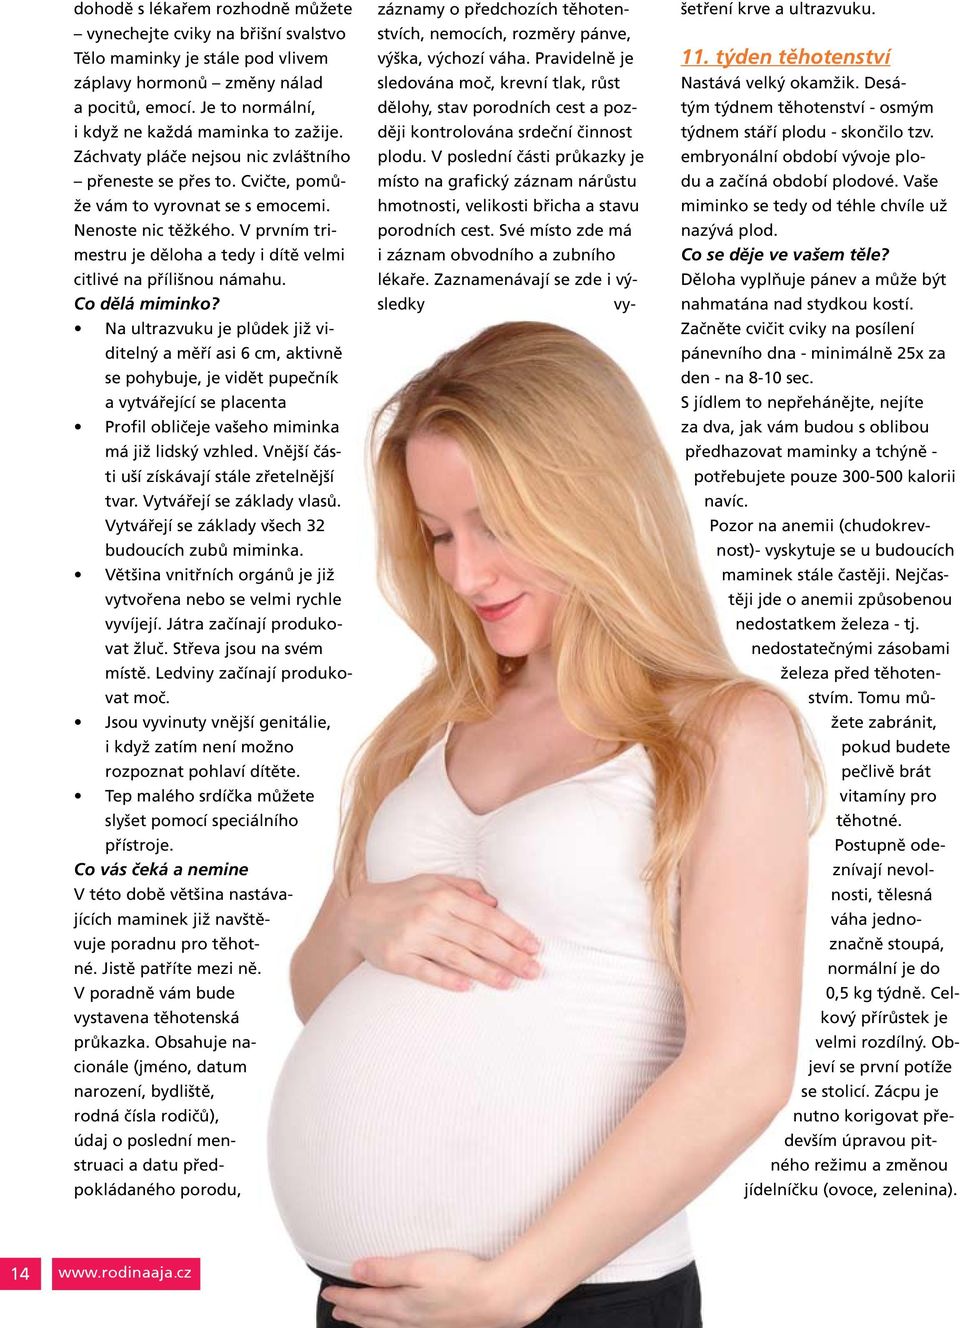 V prvním trimestru je děloha a tedy i dítě velmi citlivé na přílišnou námahu. Co dělá miminko?